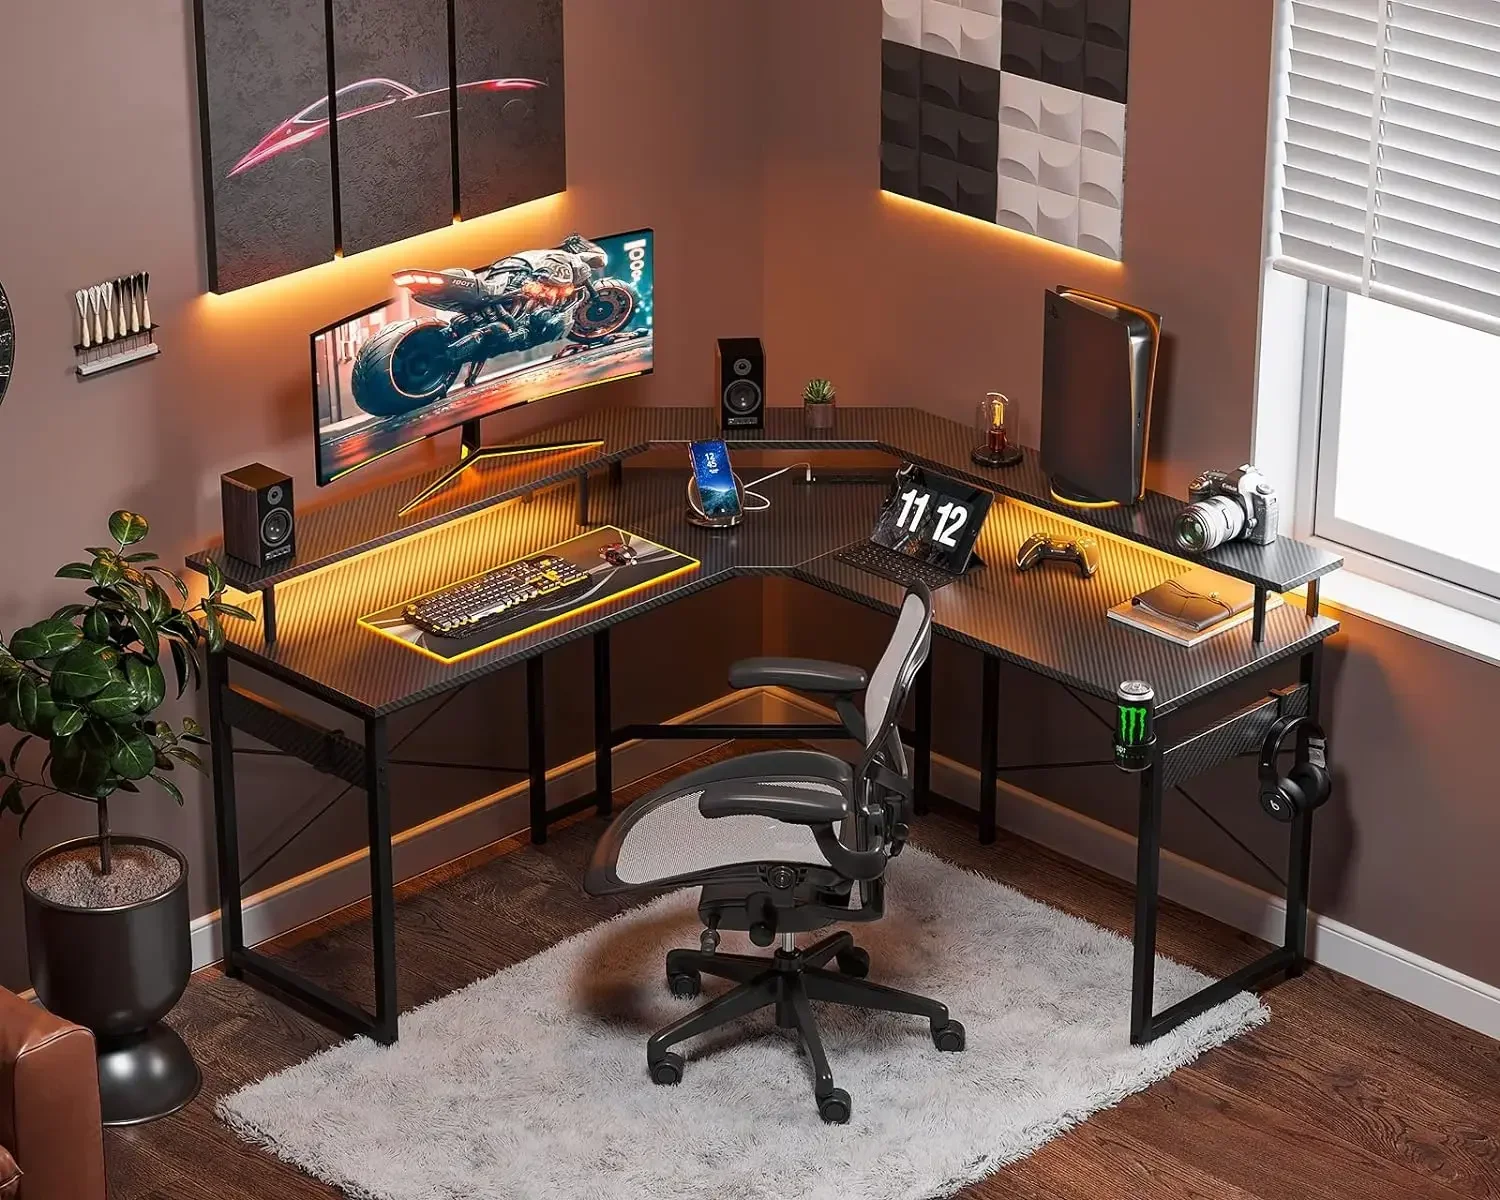 

Компьютерный игровой стол L-образной формы, 51 дюйм, со освещением, розетками питания и подставкой для полного монитора, угловой стол с держателем для чашки и крючками